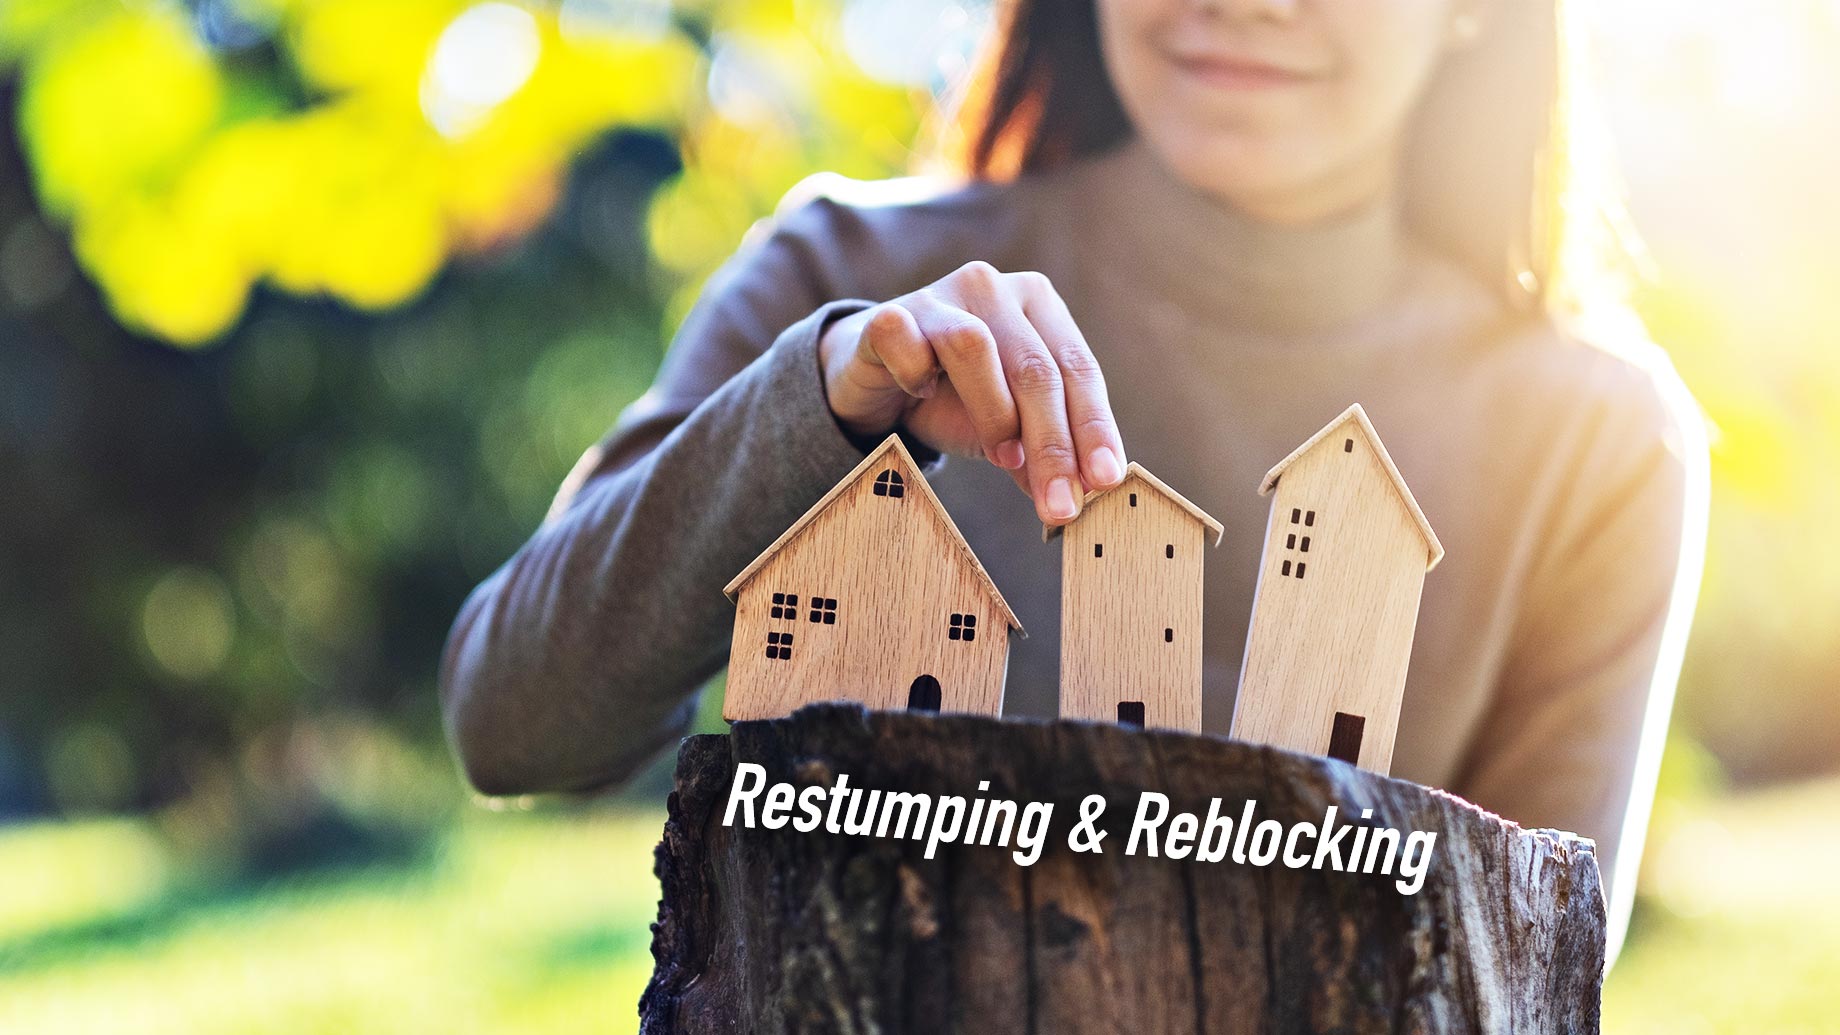 Restumping & Reblocking A Home